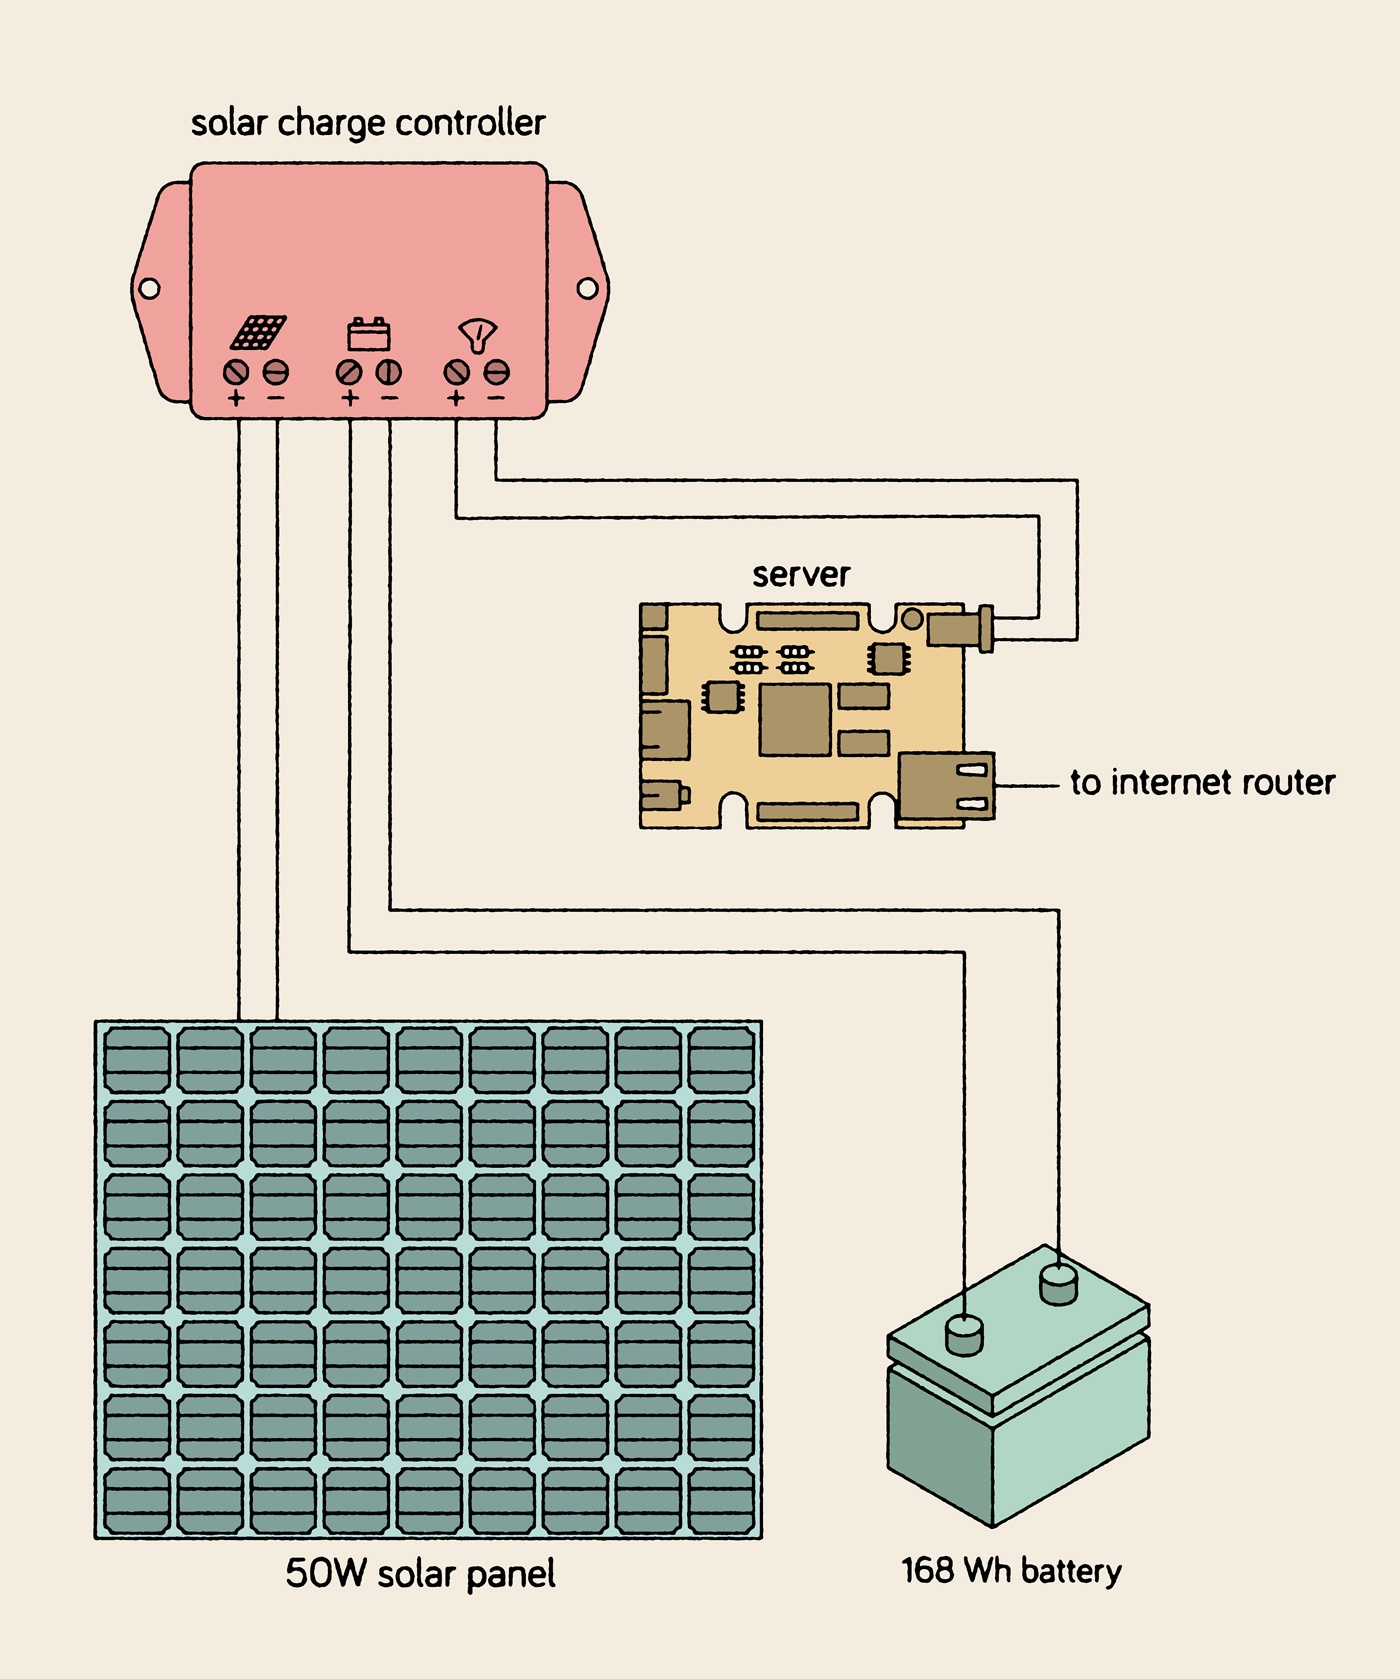 Самые необычные виды хостинга: домашний компьютер, Raspberry Pi и чужие серверы - 6